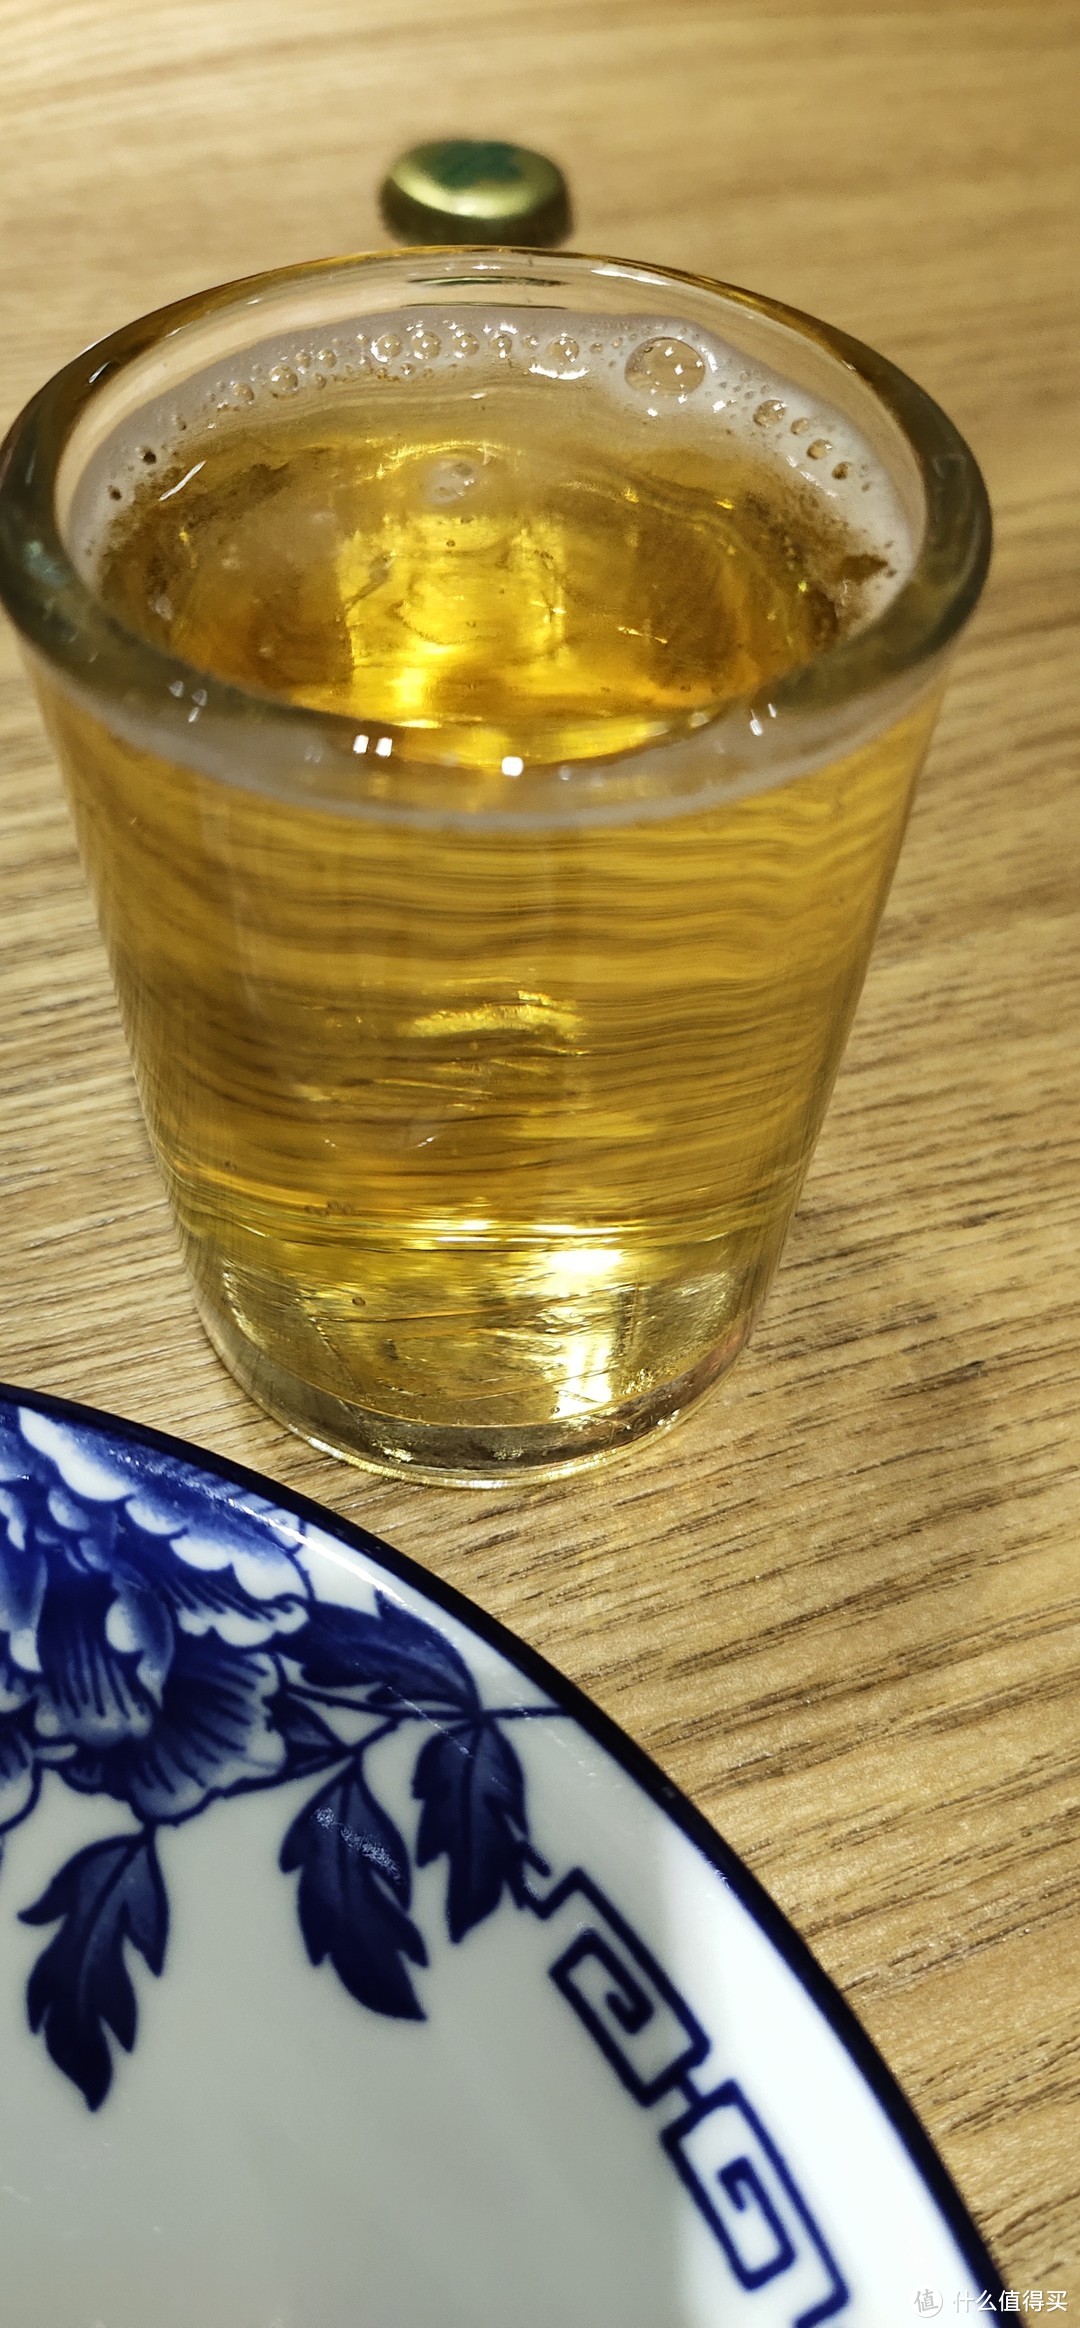 青岛人心中的“二厂青啤”怎么样？洋啤酒爱好者今天出门吃饭只能喝这个，那就给大家讲讲吧。